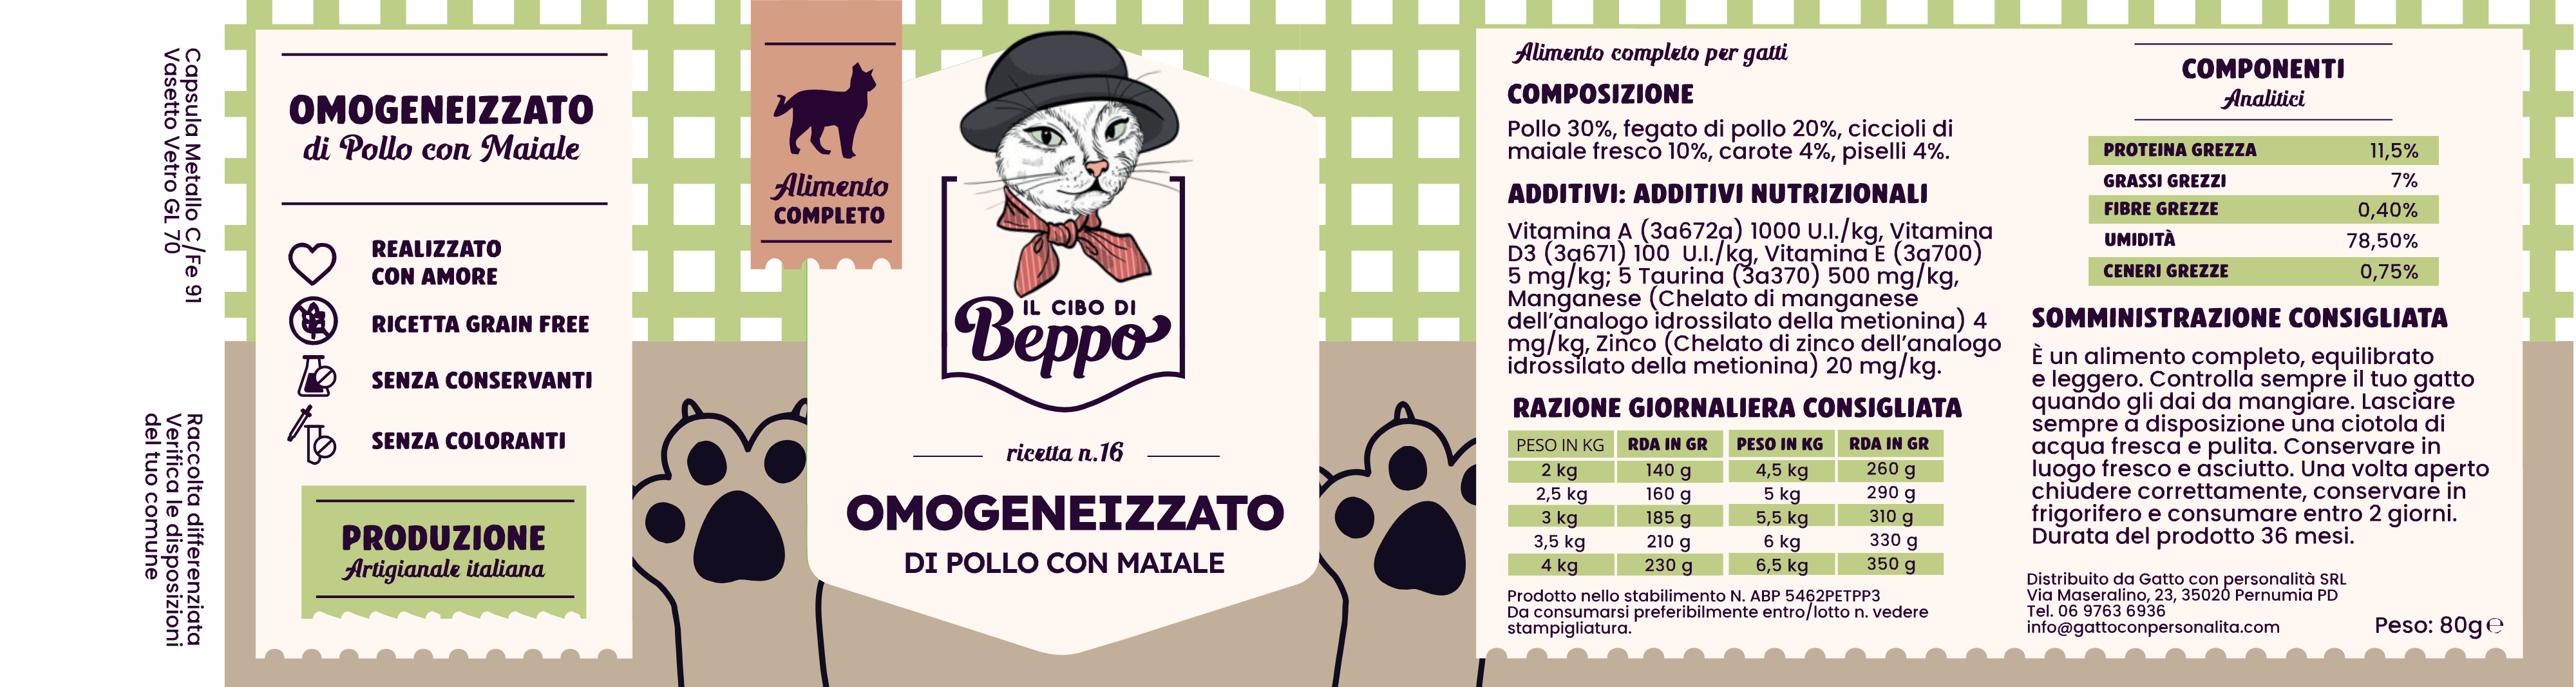 Gatto Con Personalità Cibo di Beppo - Umido Omogenizzato in Vasocottura - 80g